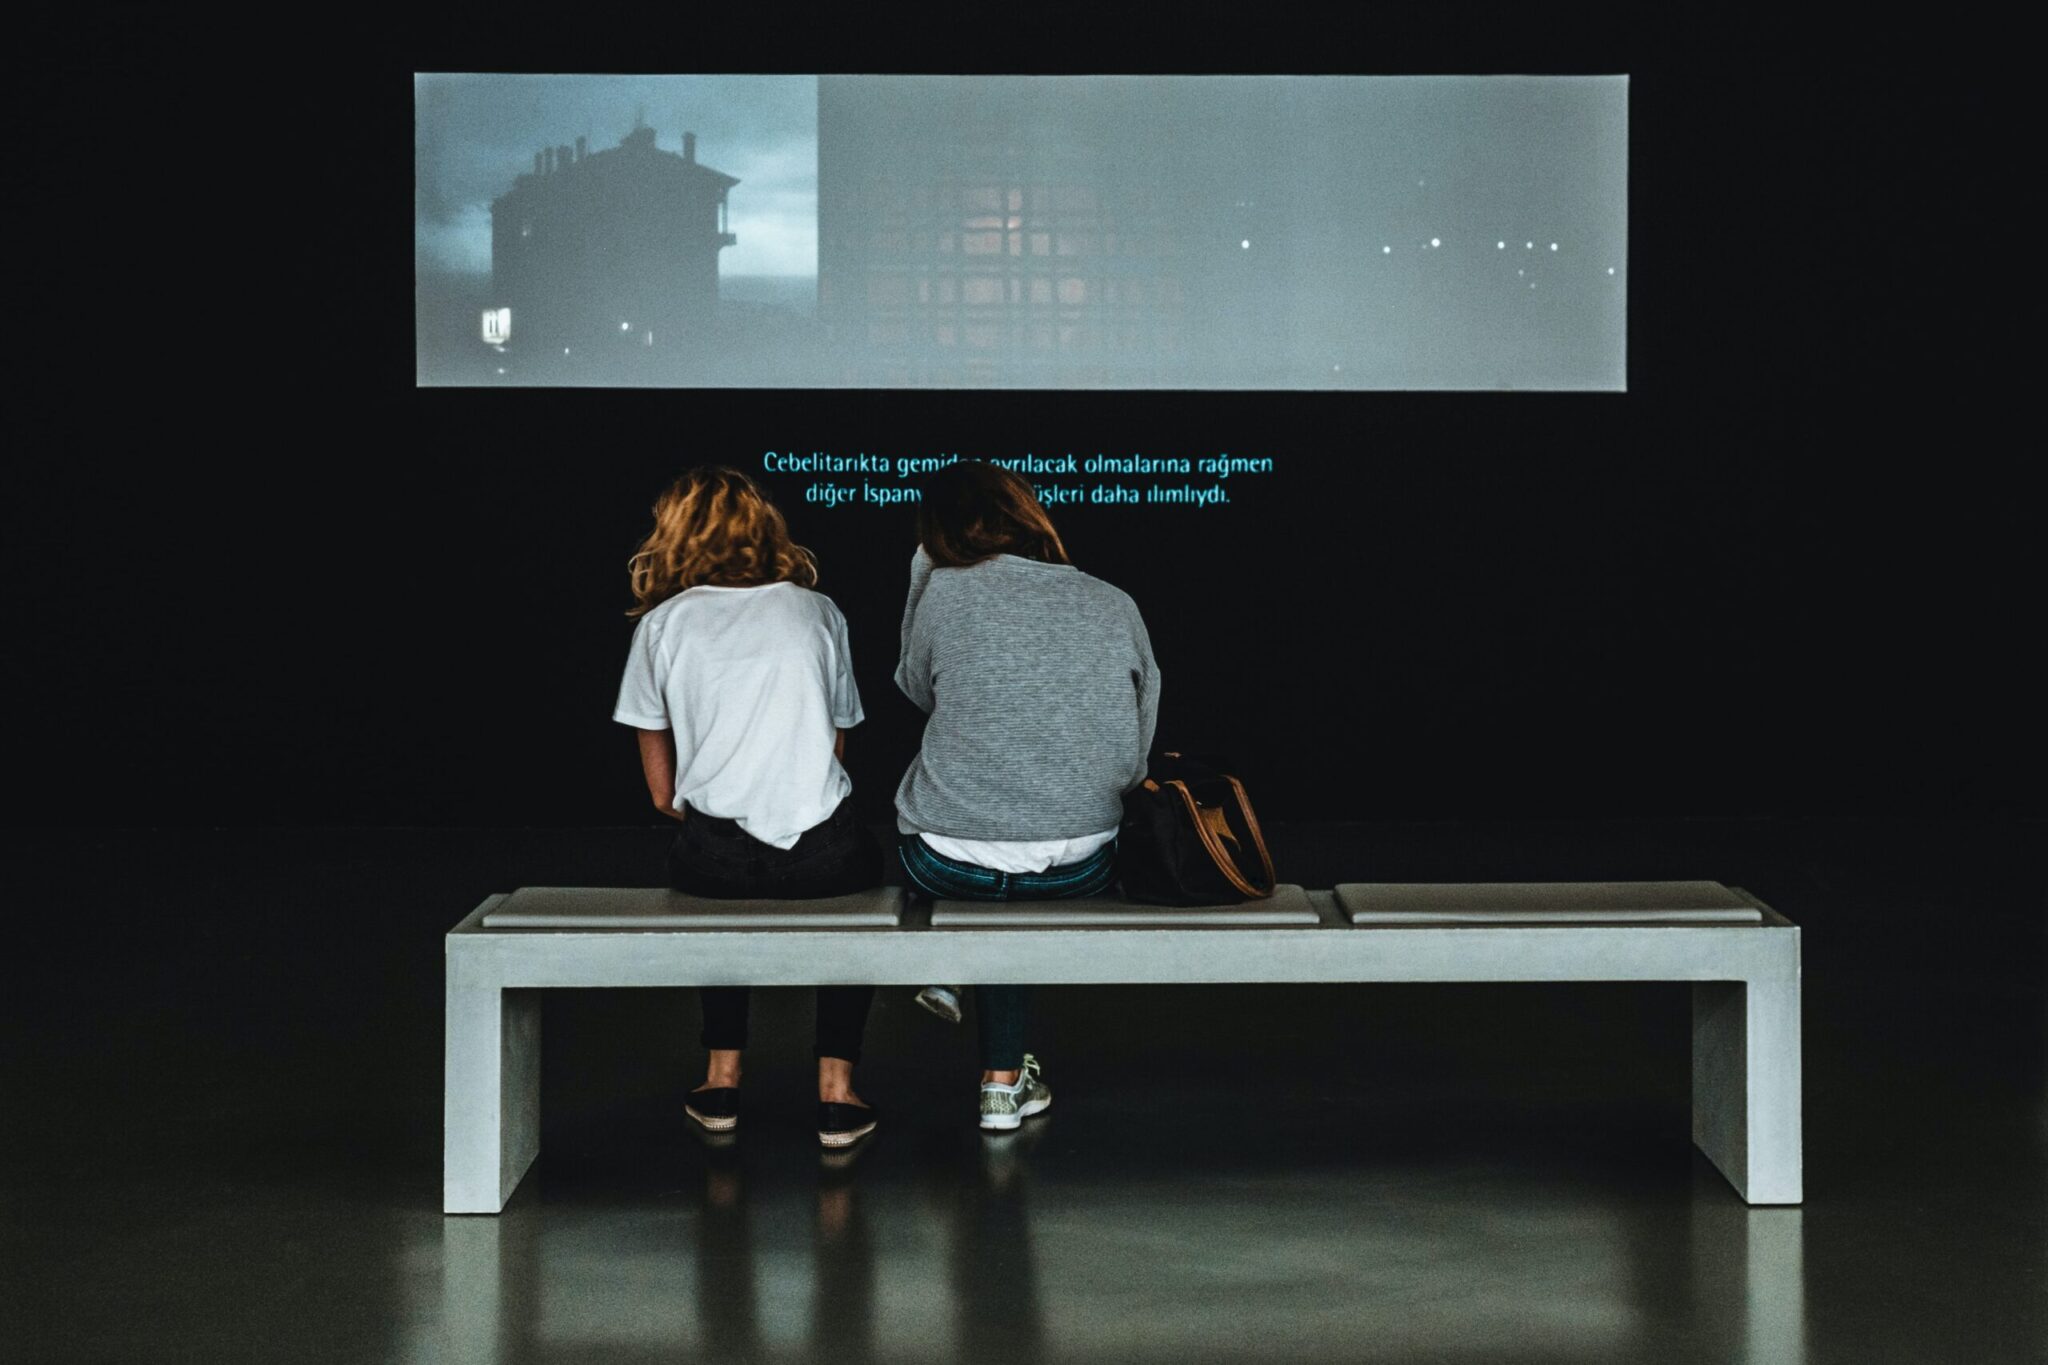 Två unga kvinnor sitter på en bänk i en mörklagd utställningslokal och ser på en projektion på en vägg.